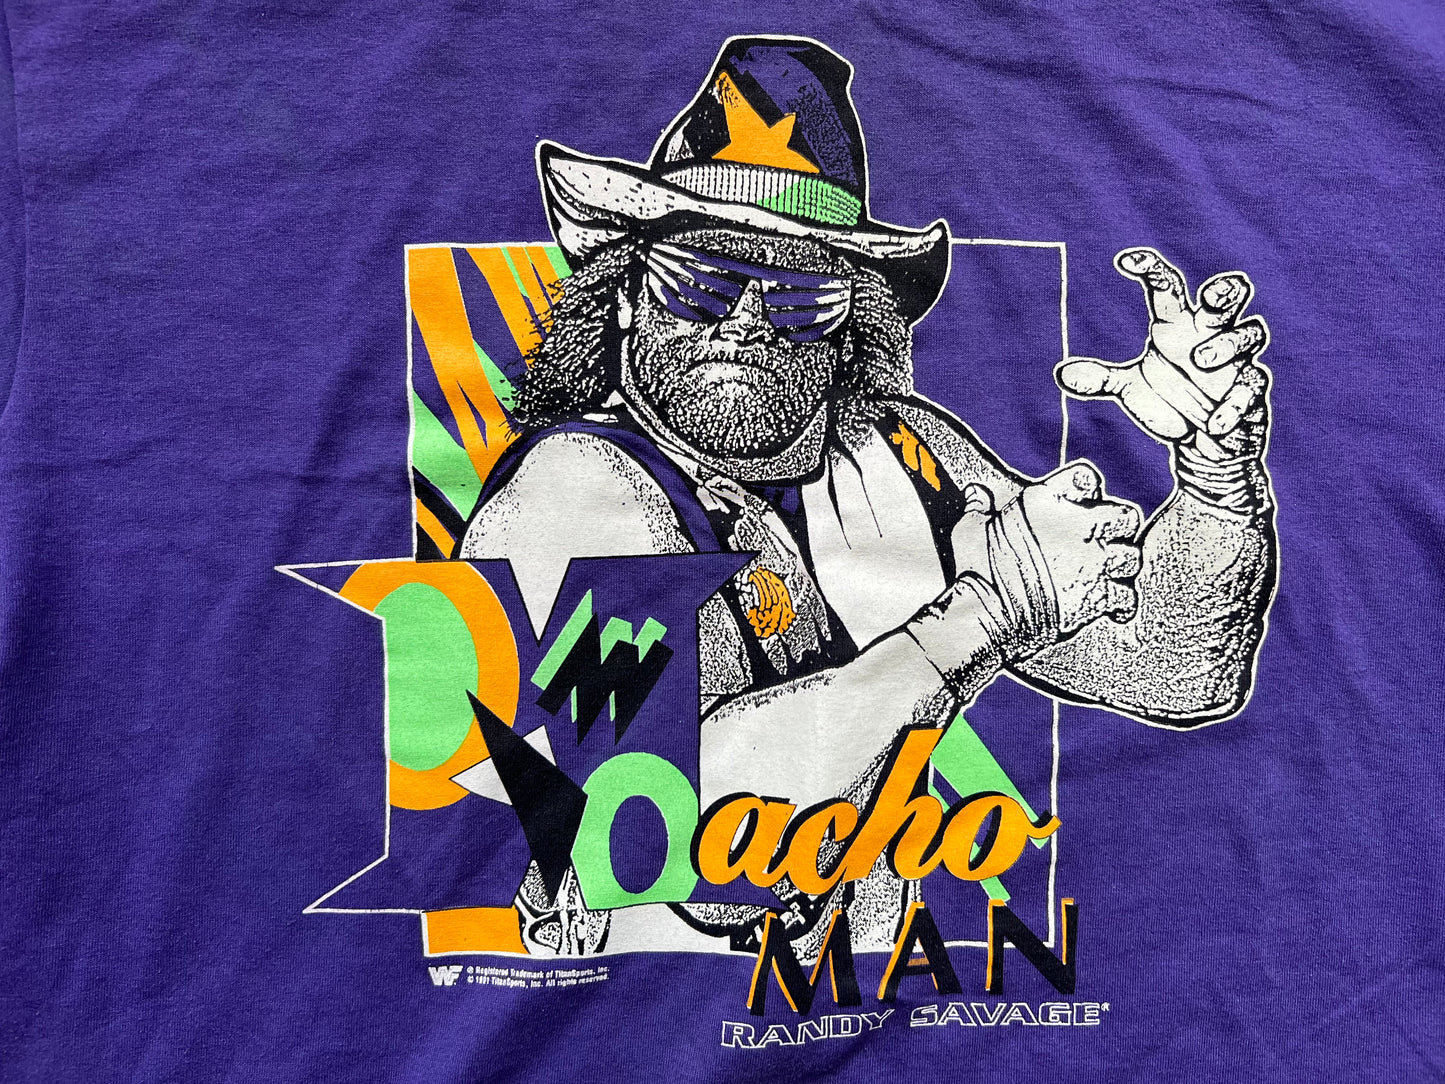 1991 WWF “Macho Man” Randy Savage